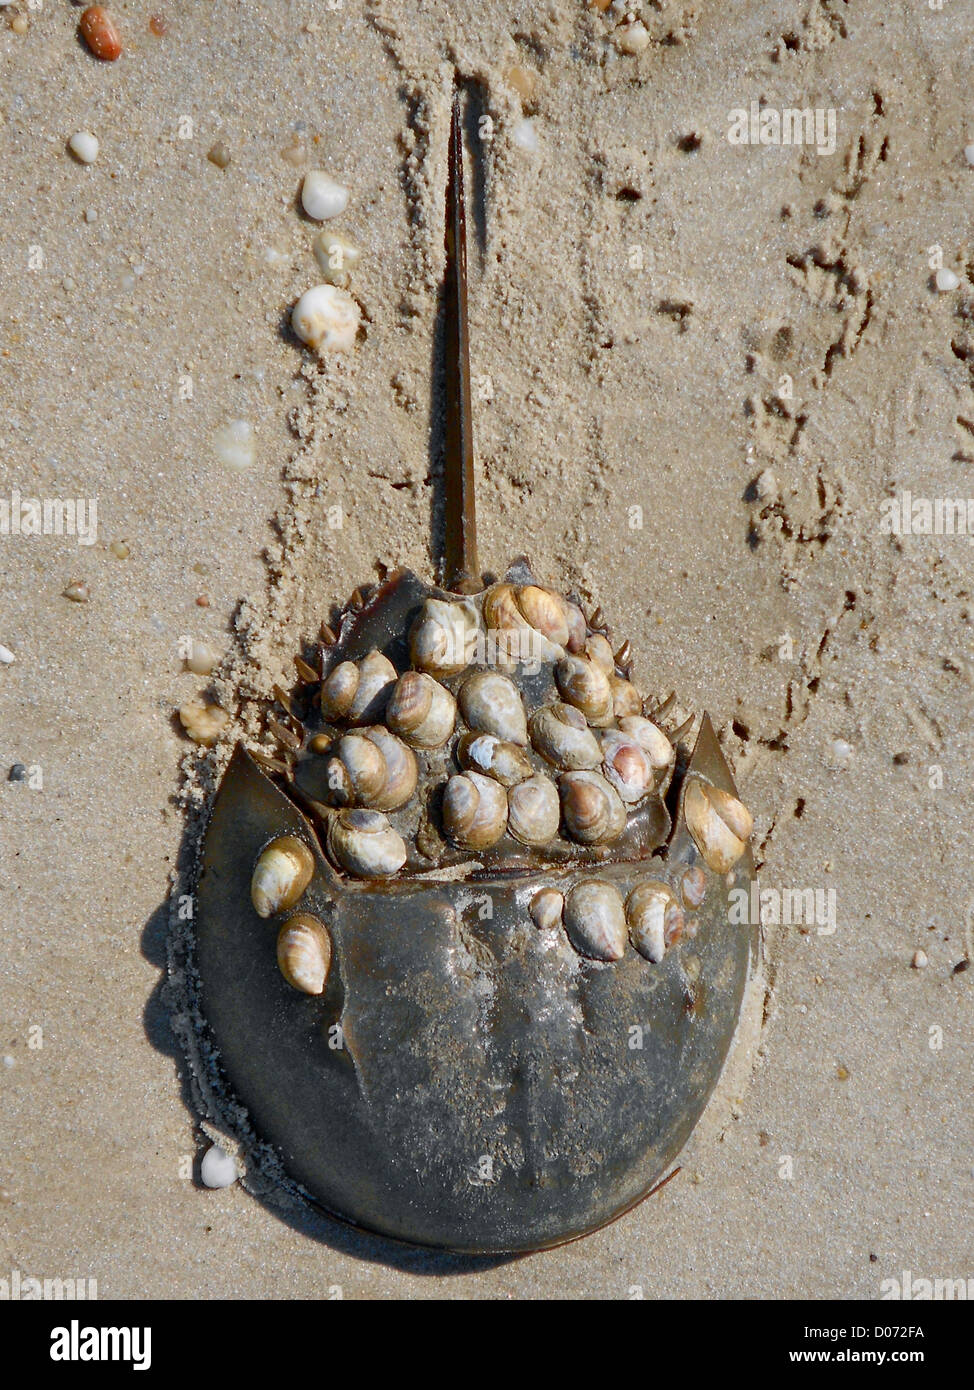 Horseshoe Crab mit Schnecken (Crepidula) an der Schale befestigt. Foto in der Nähe von Villen, New Jersey, Delaware Bay. Krebs war ap Stockfoto